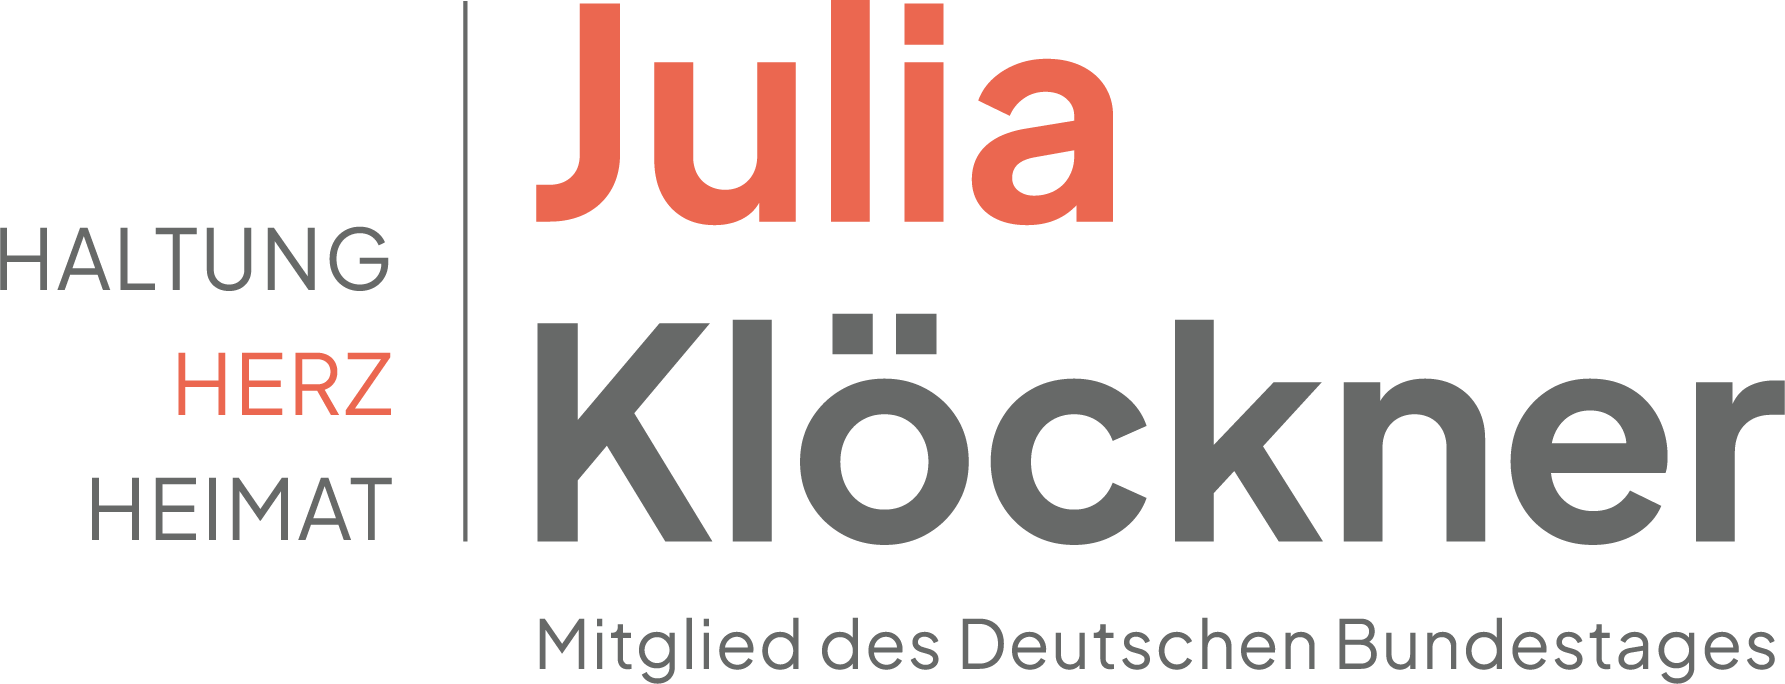 Julia Klöckner